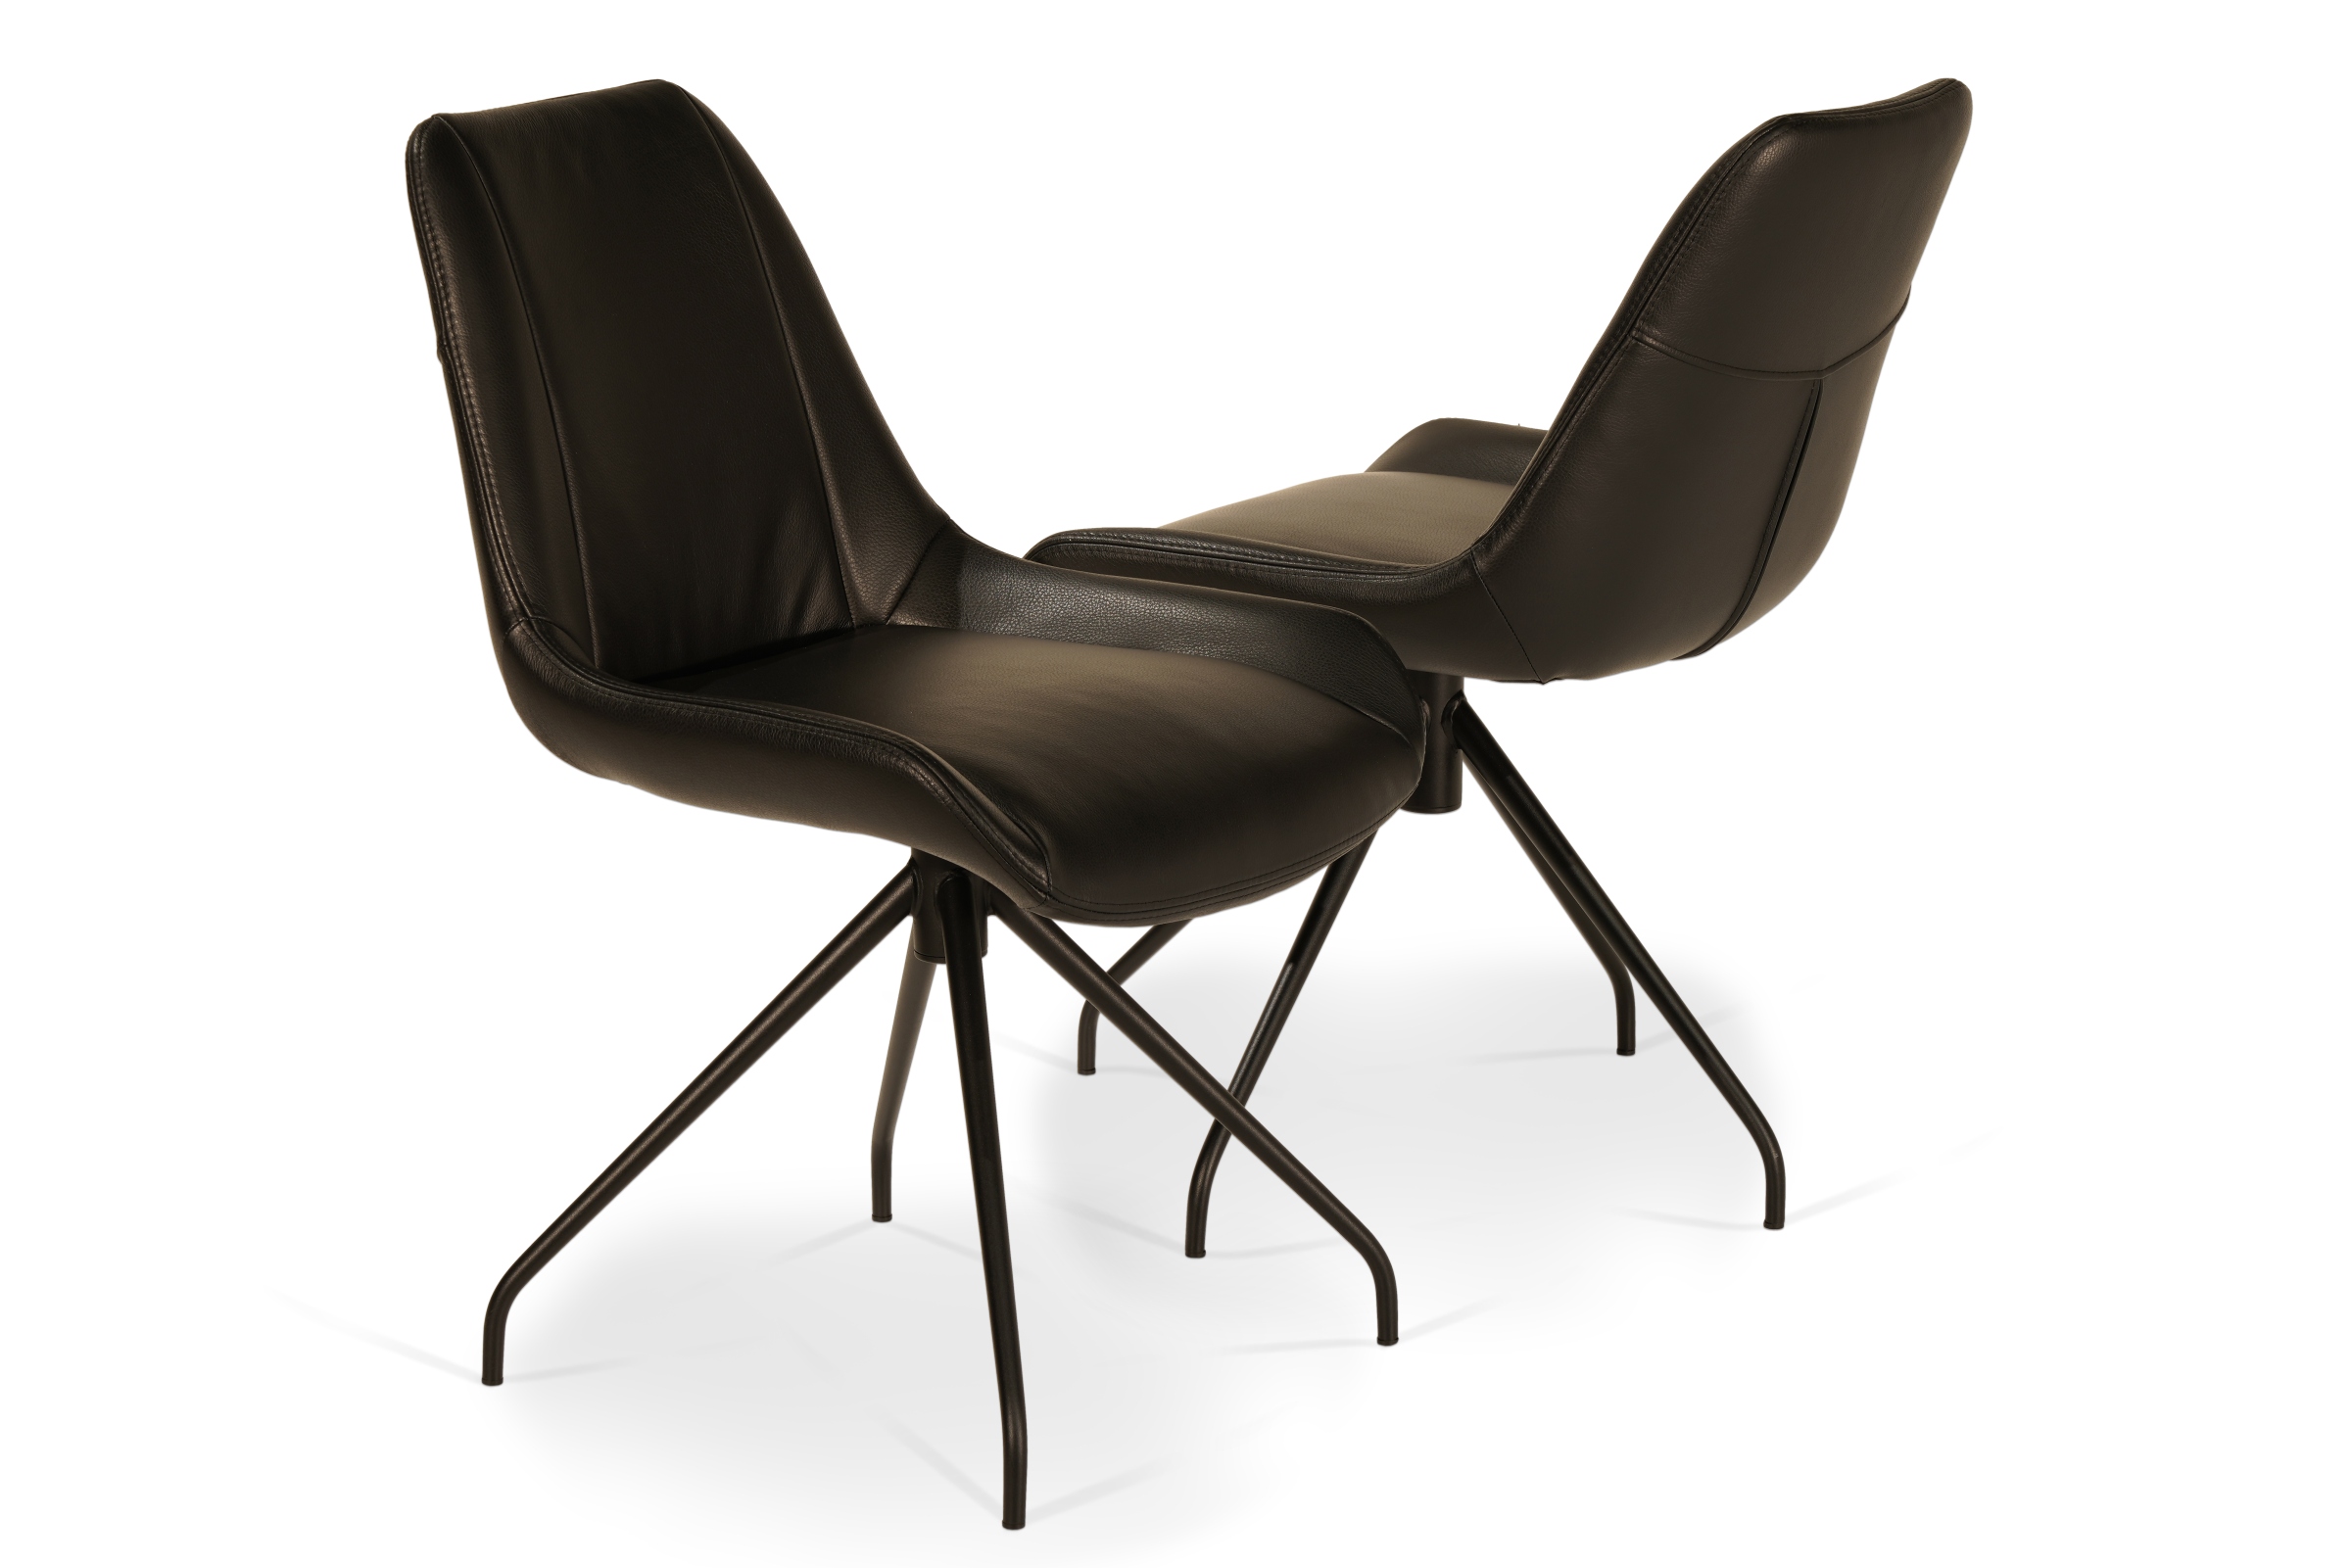 Obrotowe krzesełka na metalowej podstawie, wykonane z naturalnej, czarnej skóry bydlęcej.